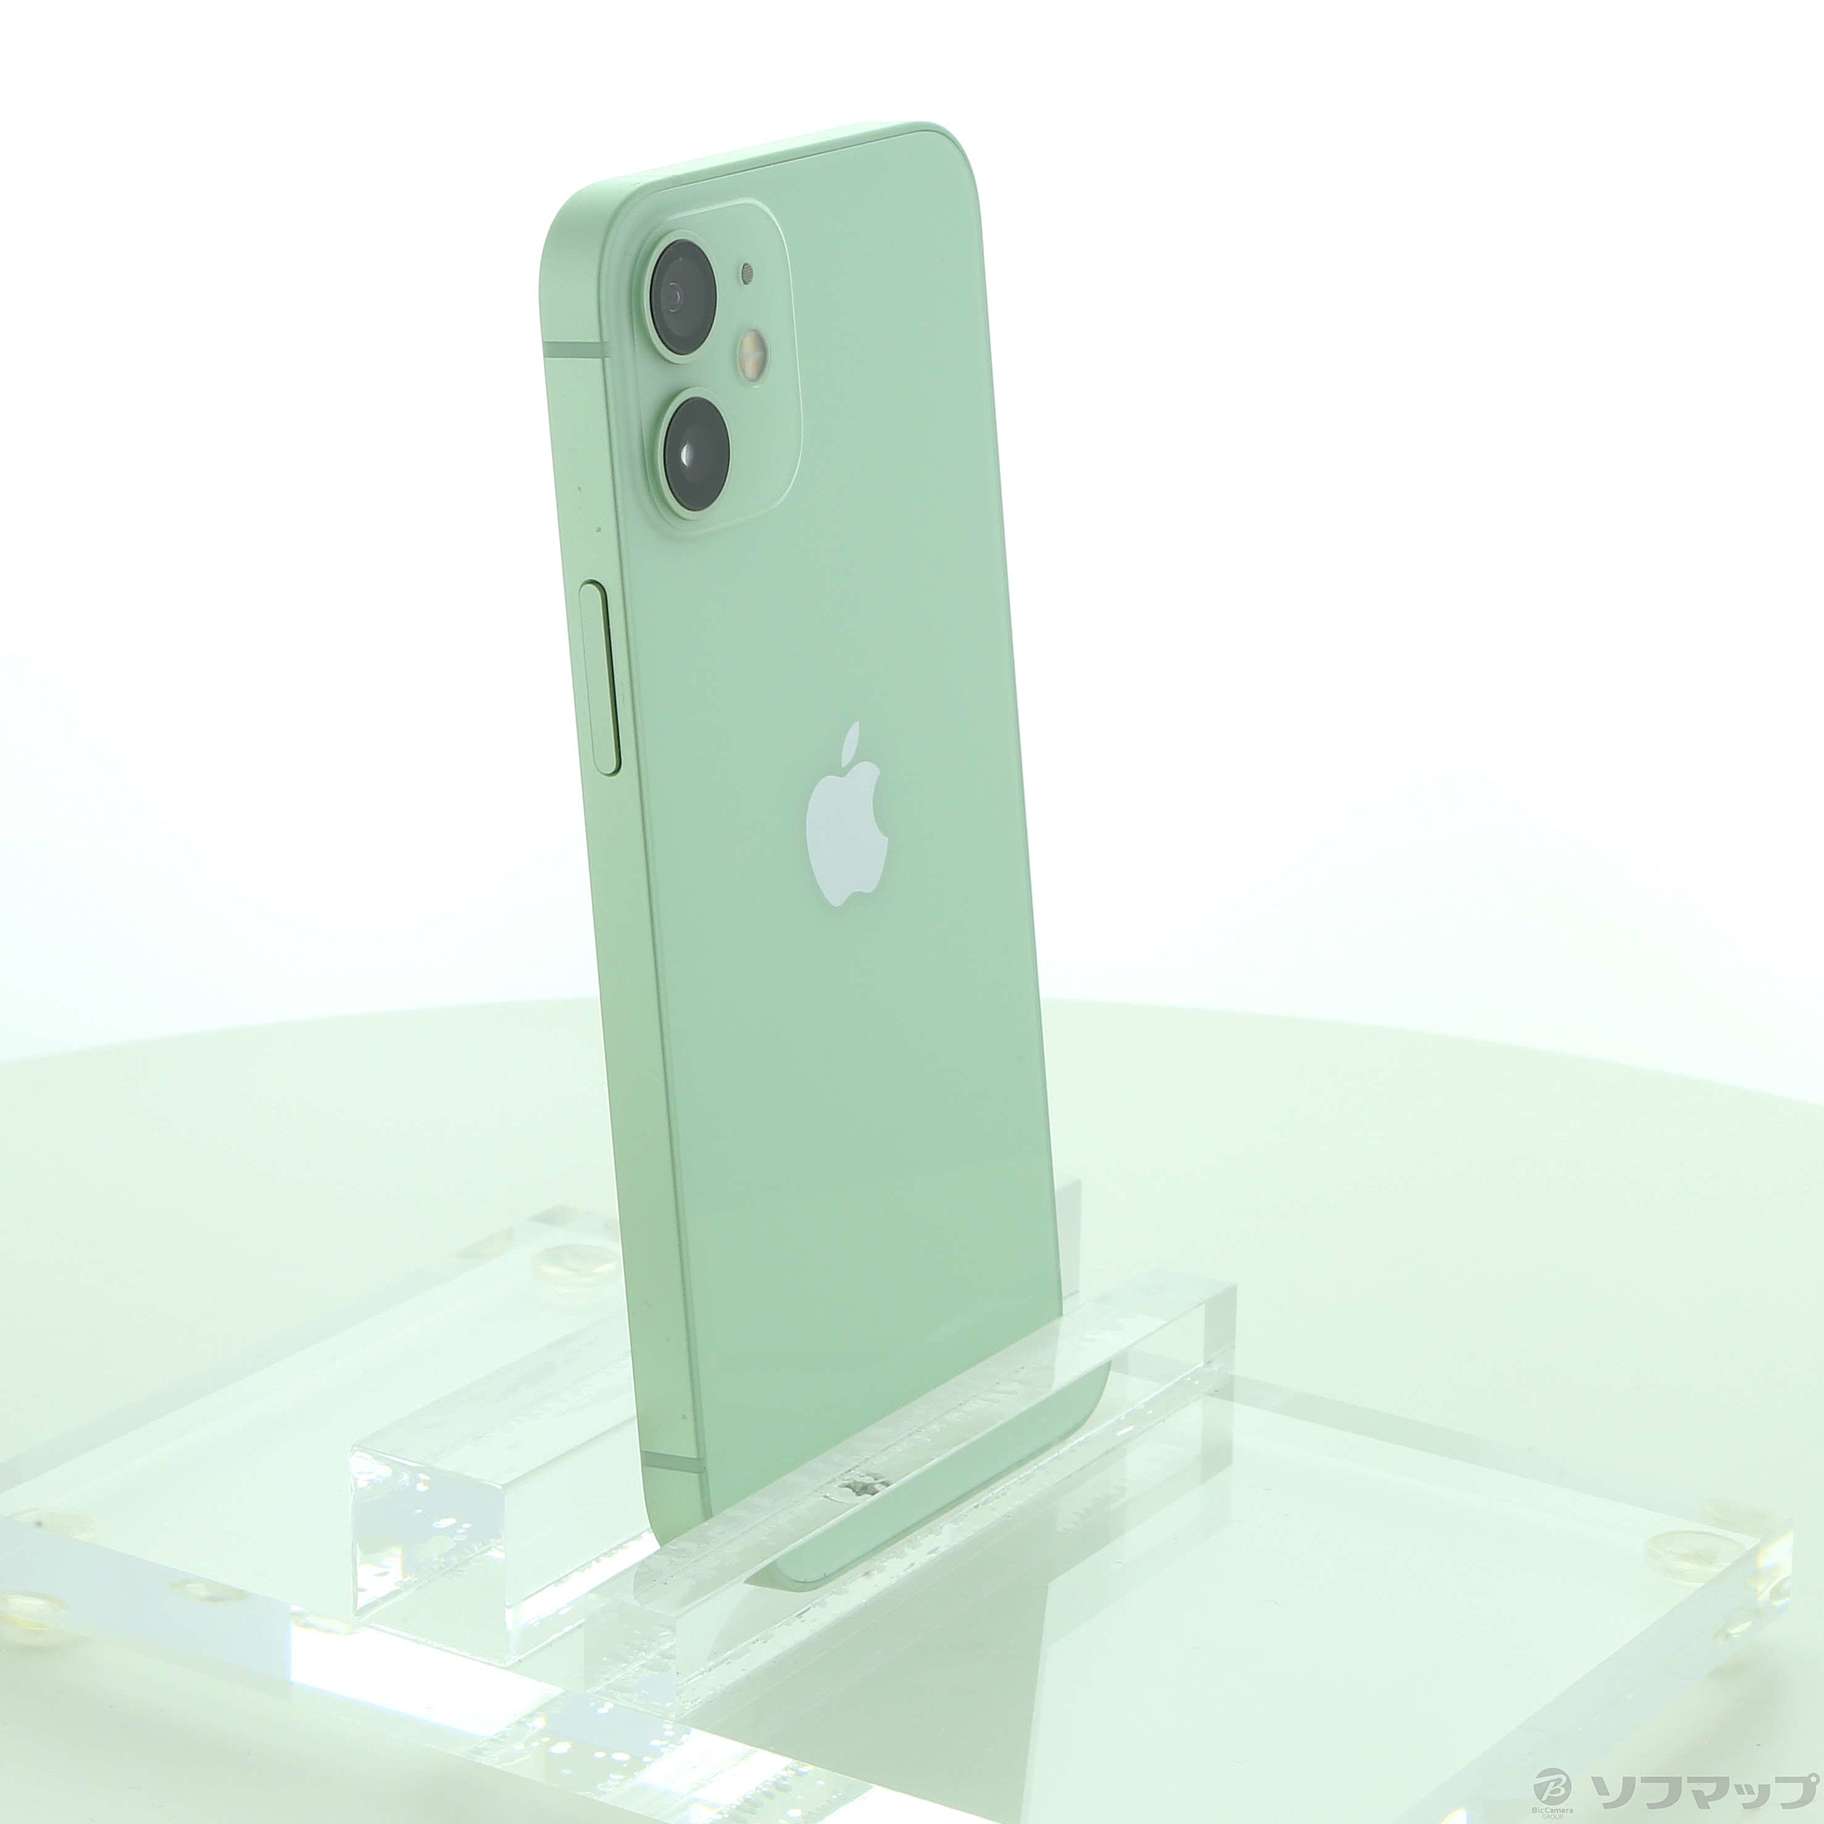 iphone12 mini green 256g